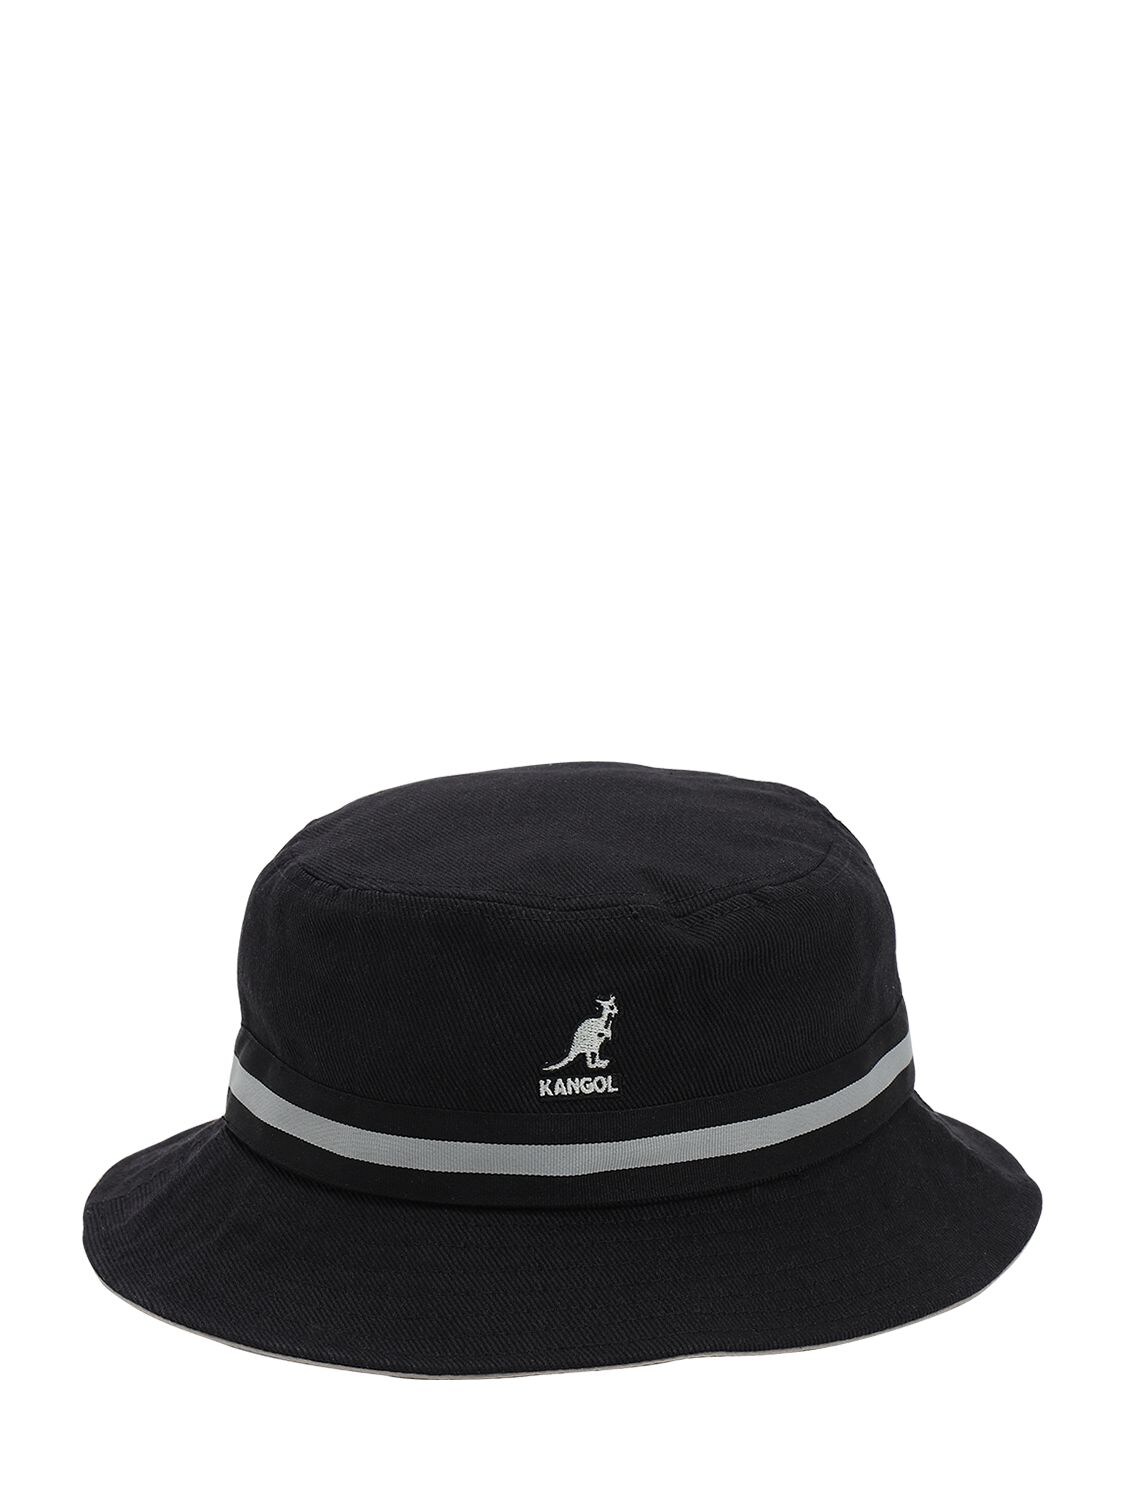 Kangol Stripe Lahinch Bucket Hat In Black